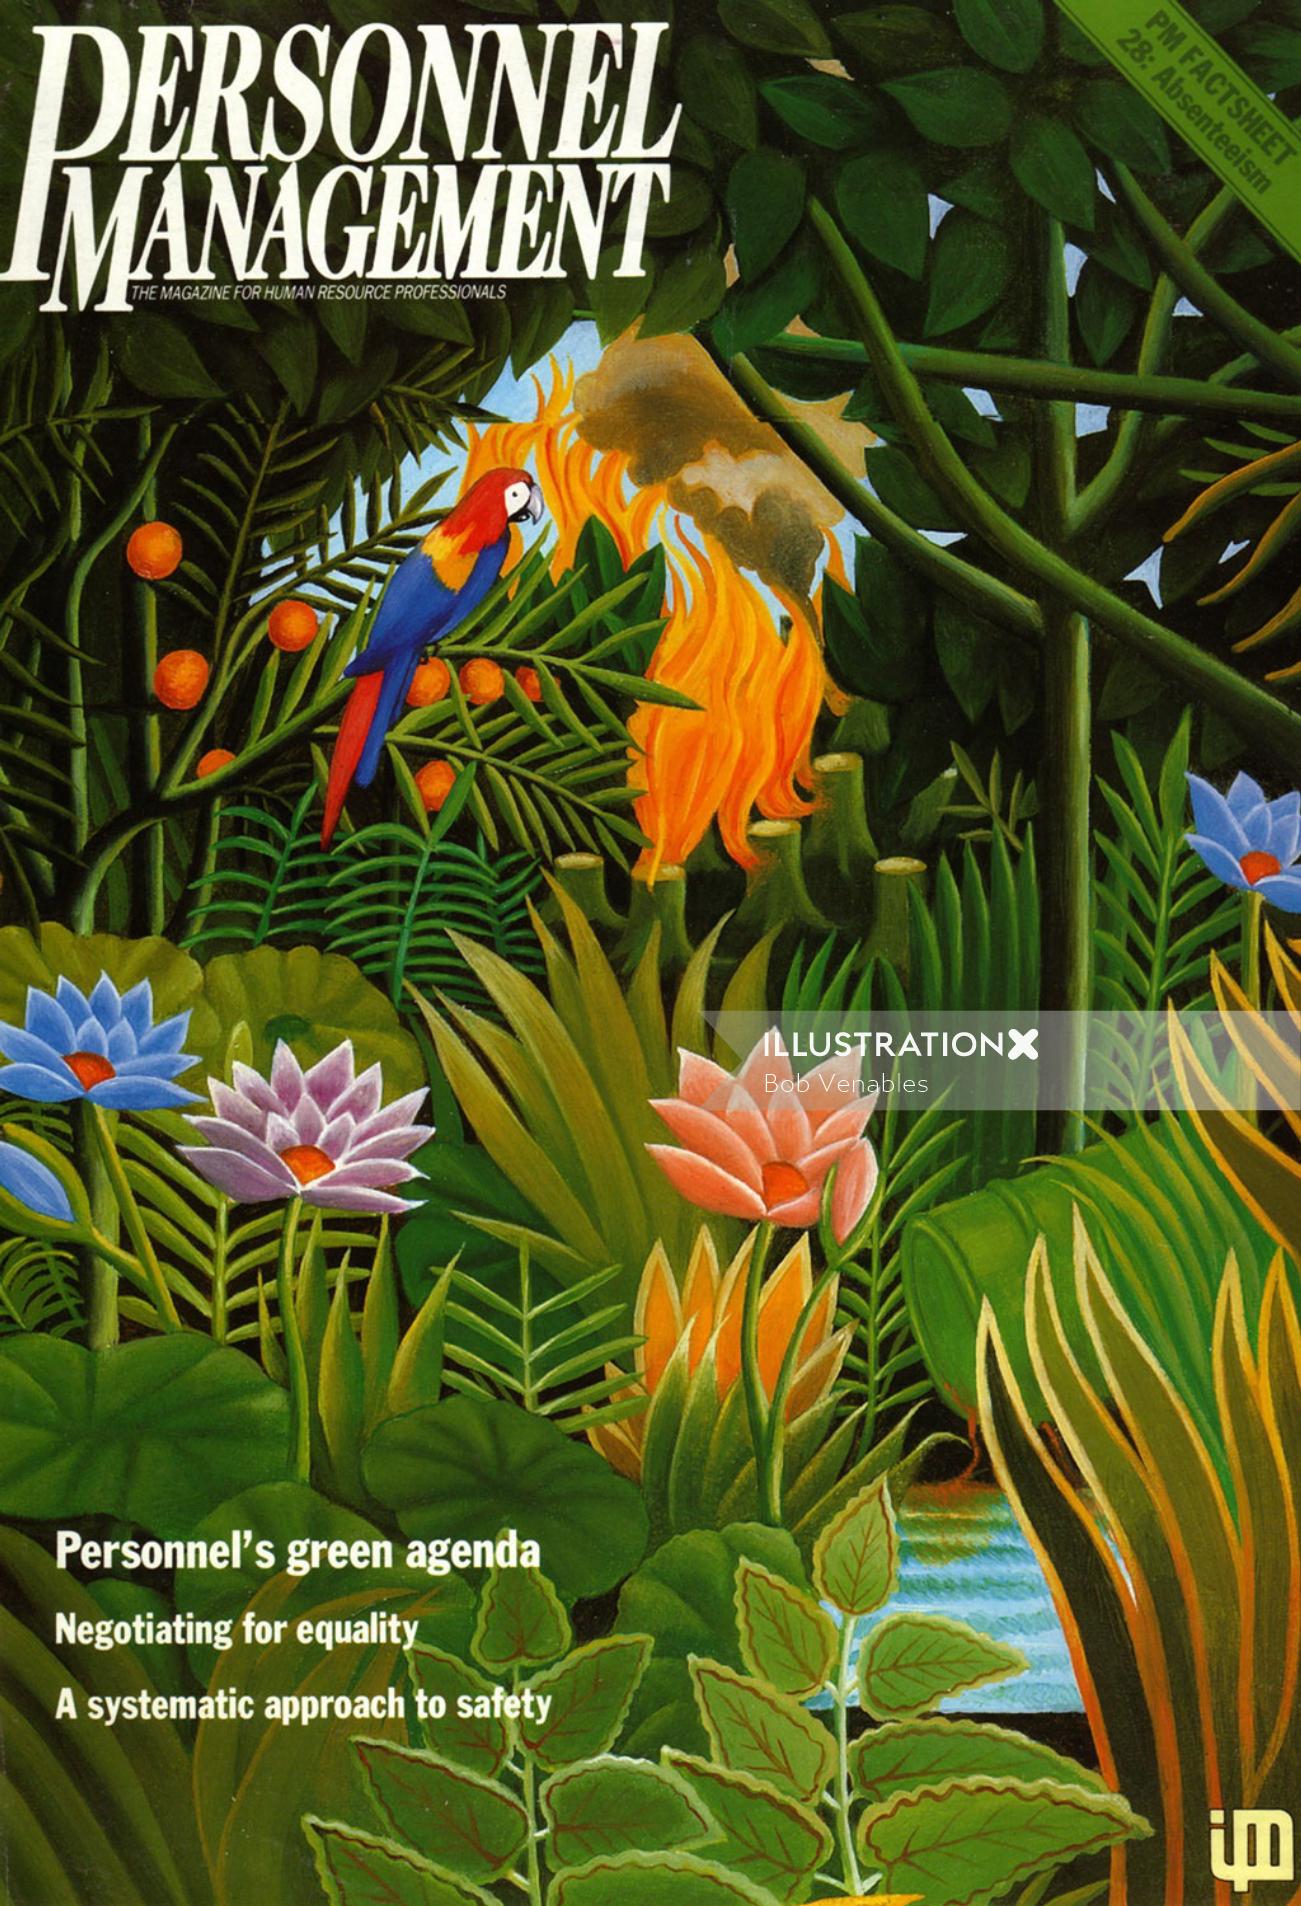 人事管理誌の熱帯雨林に関するカバーアート